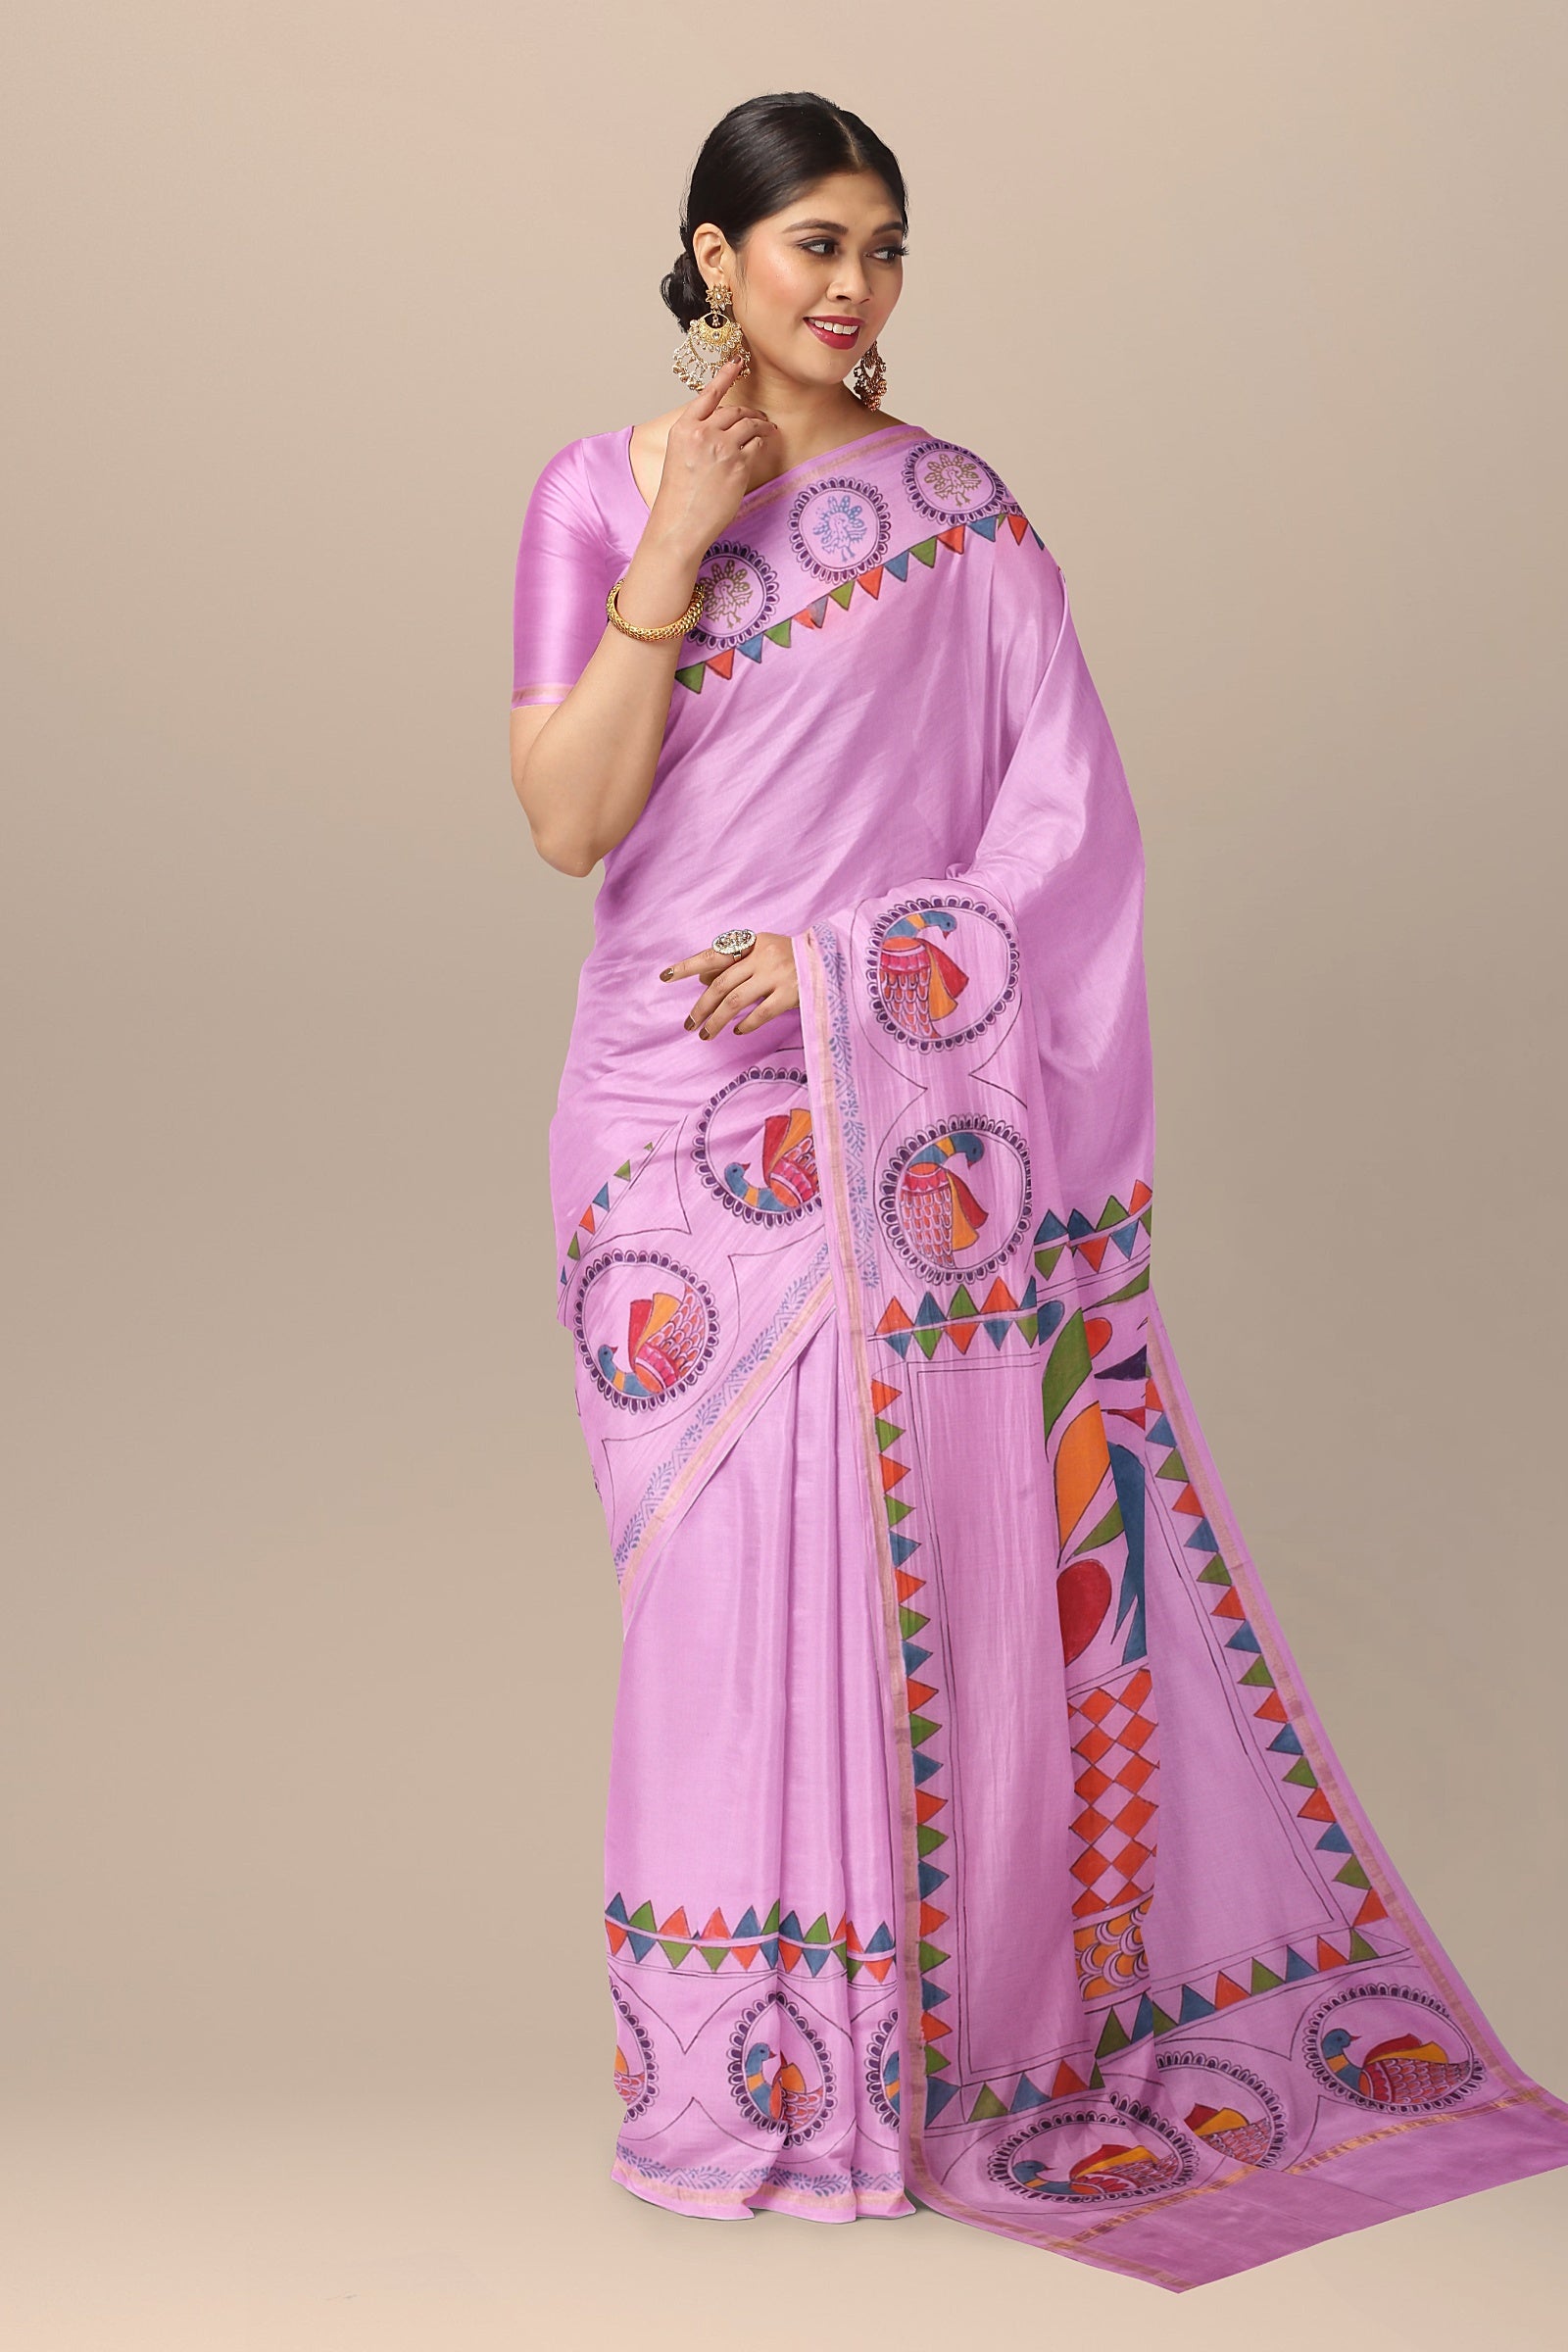 Handwoven Hand Painted Pink Sausar Silk Saree With Gond Bird Painting SKU-AS10031 - Bhartiya Shilp